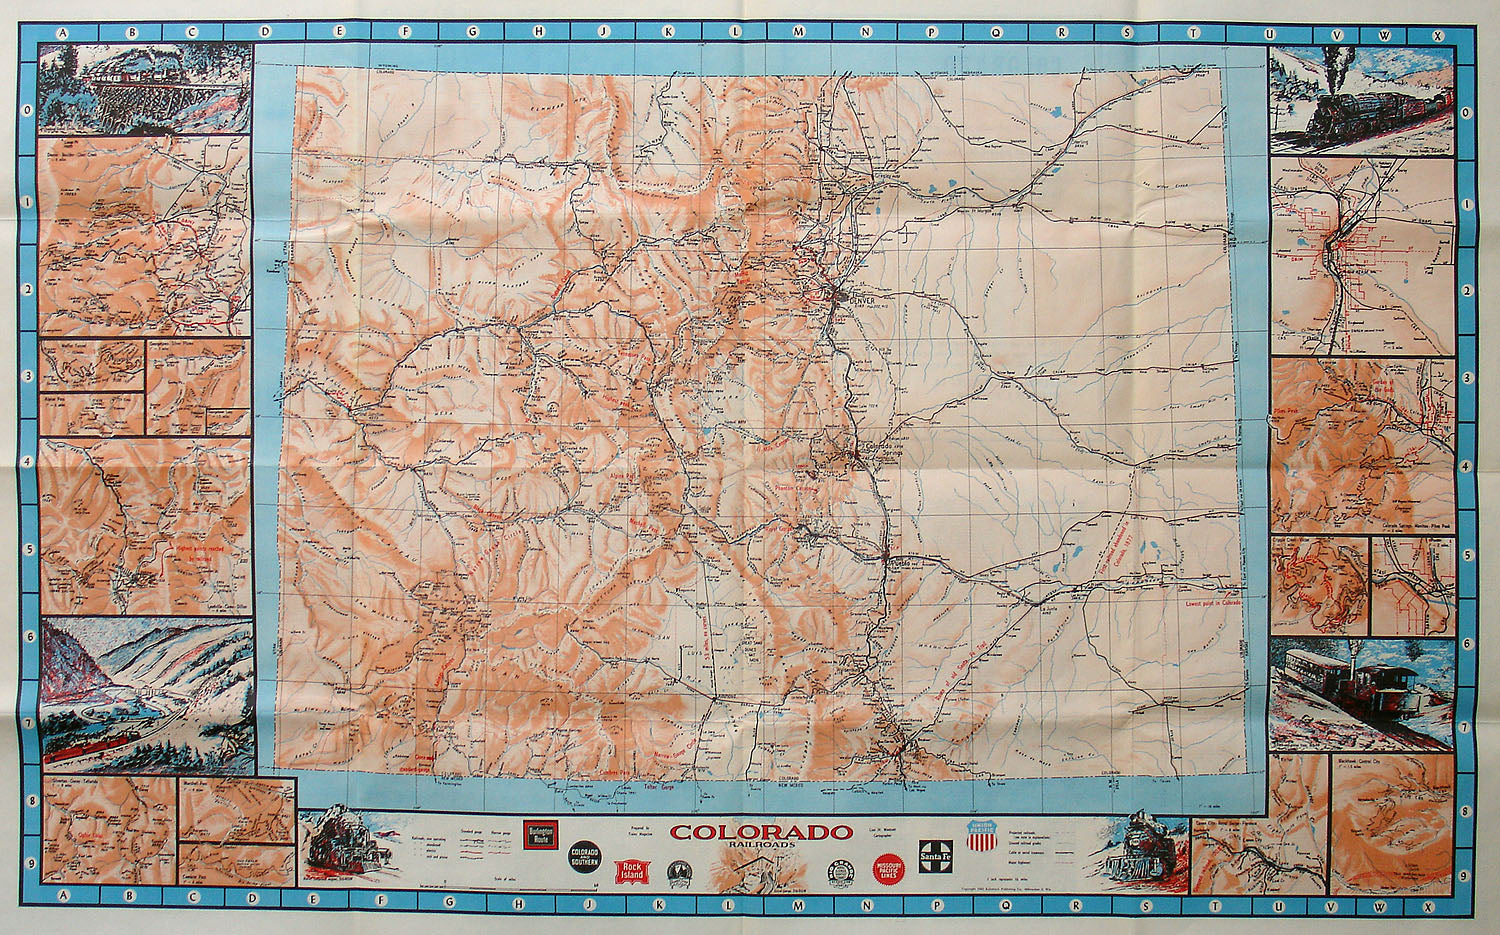 Colorado Railroad Map